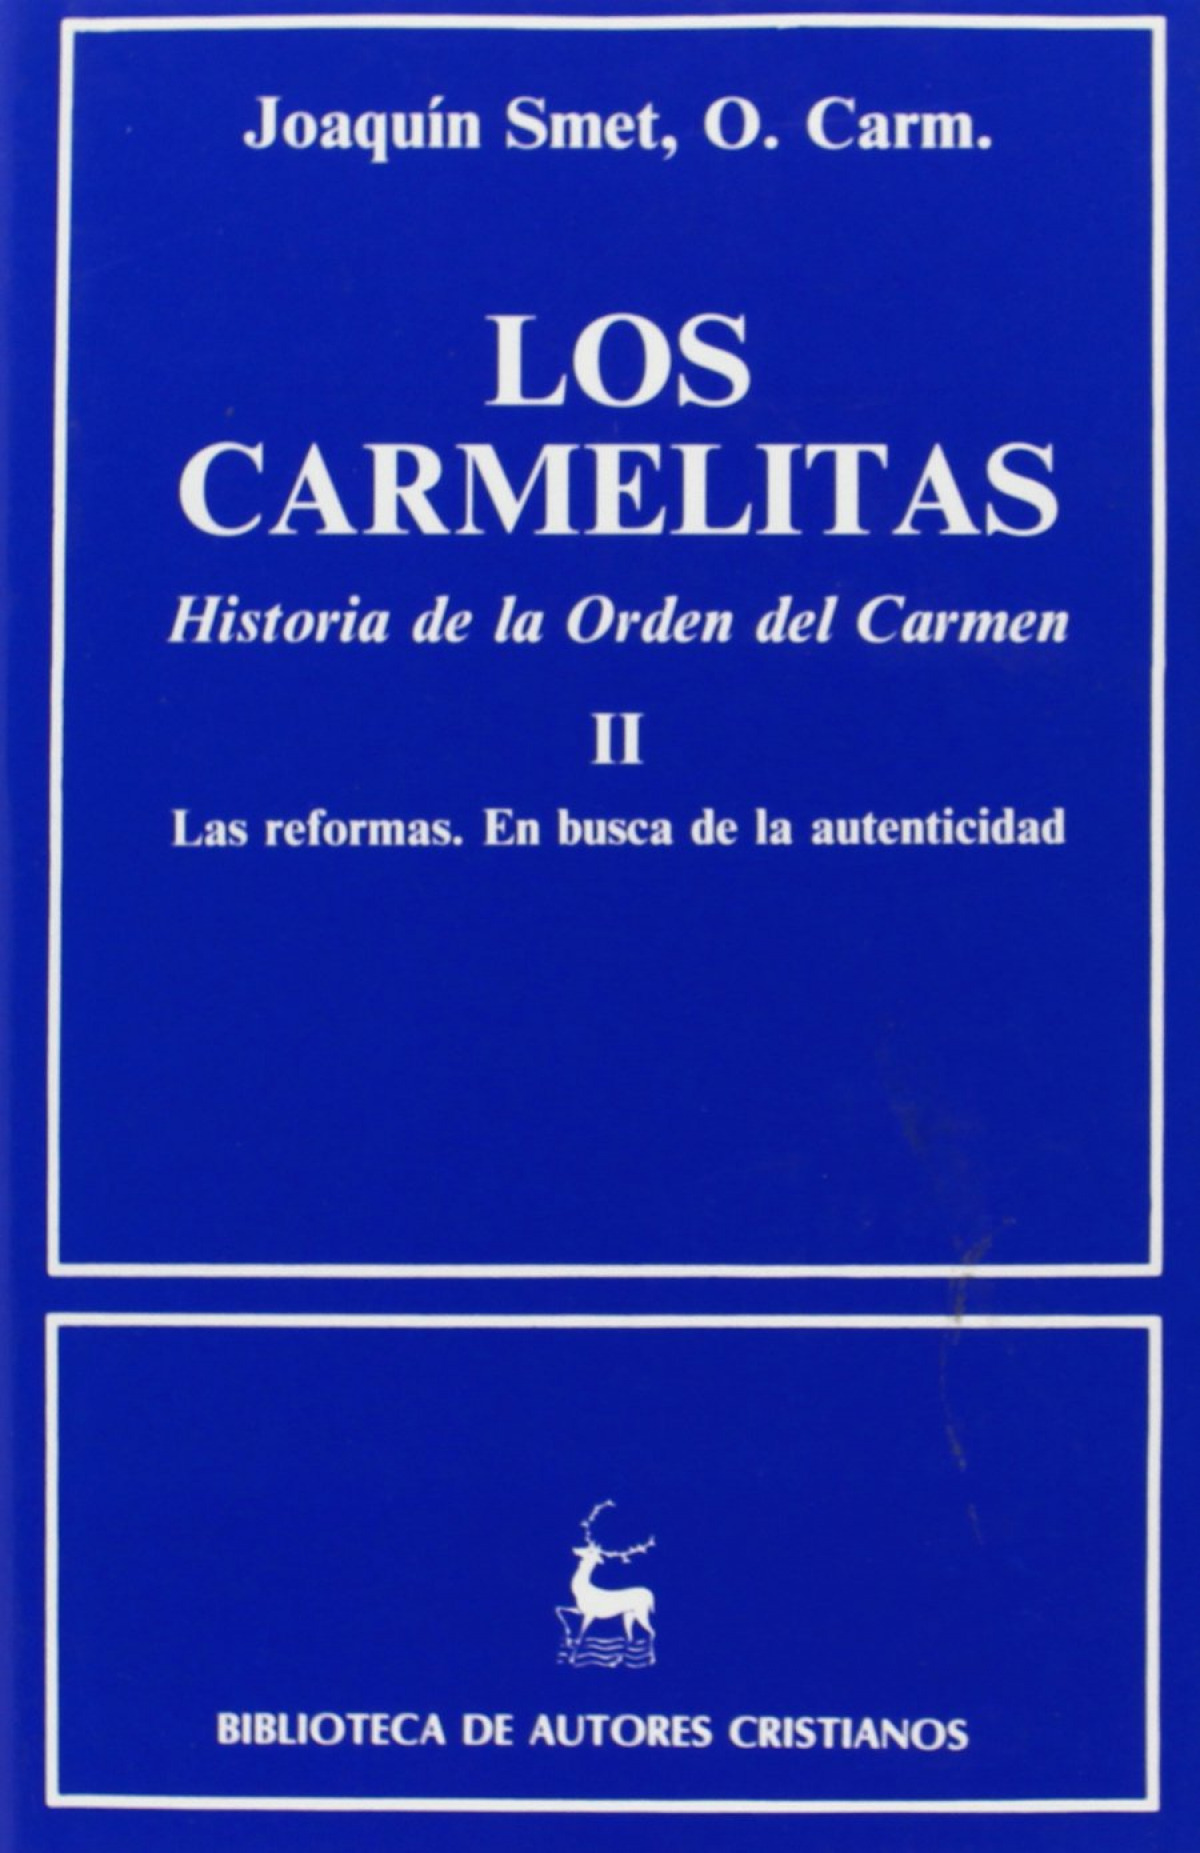 Los carmelitas.Historia de la Orden del Carmen.II: Las reformas.En bus - Smet, Joaquín